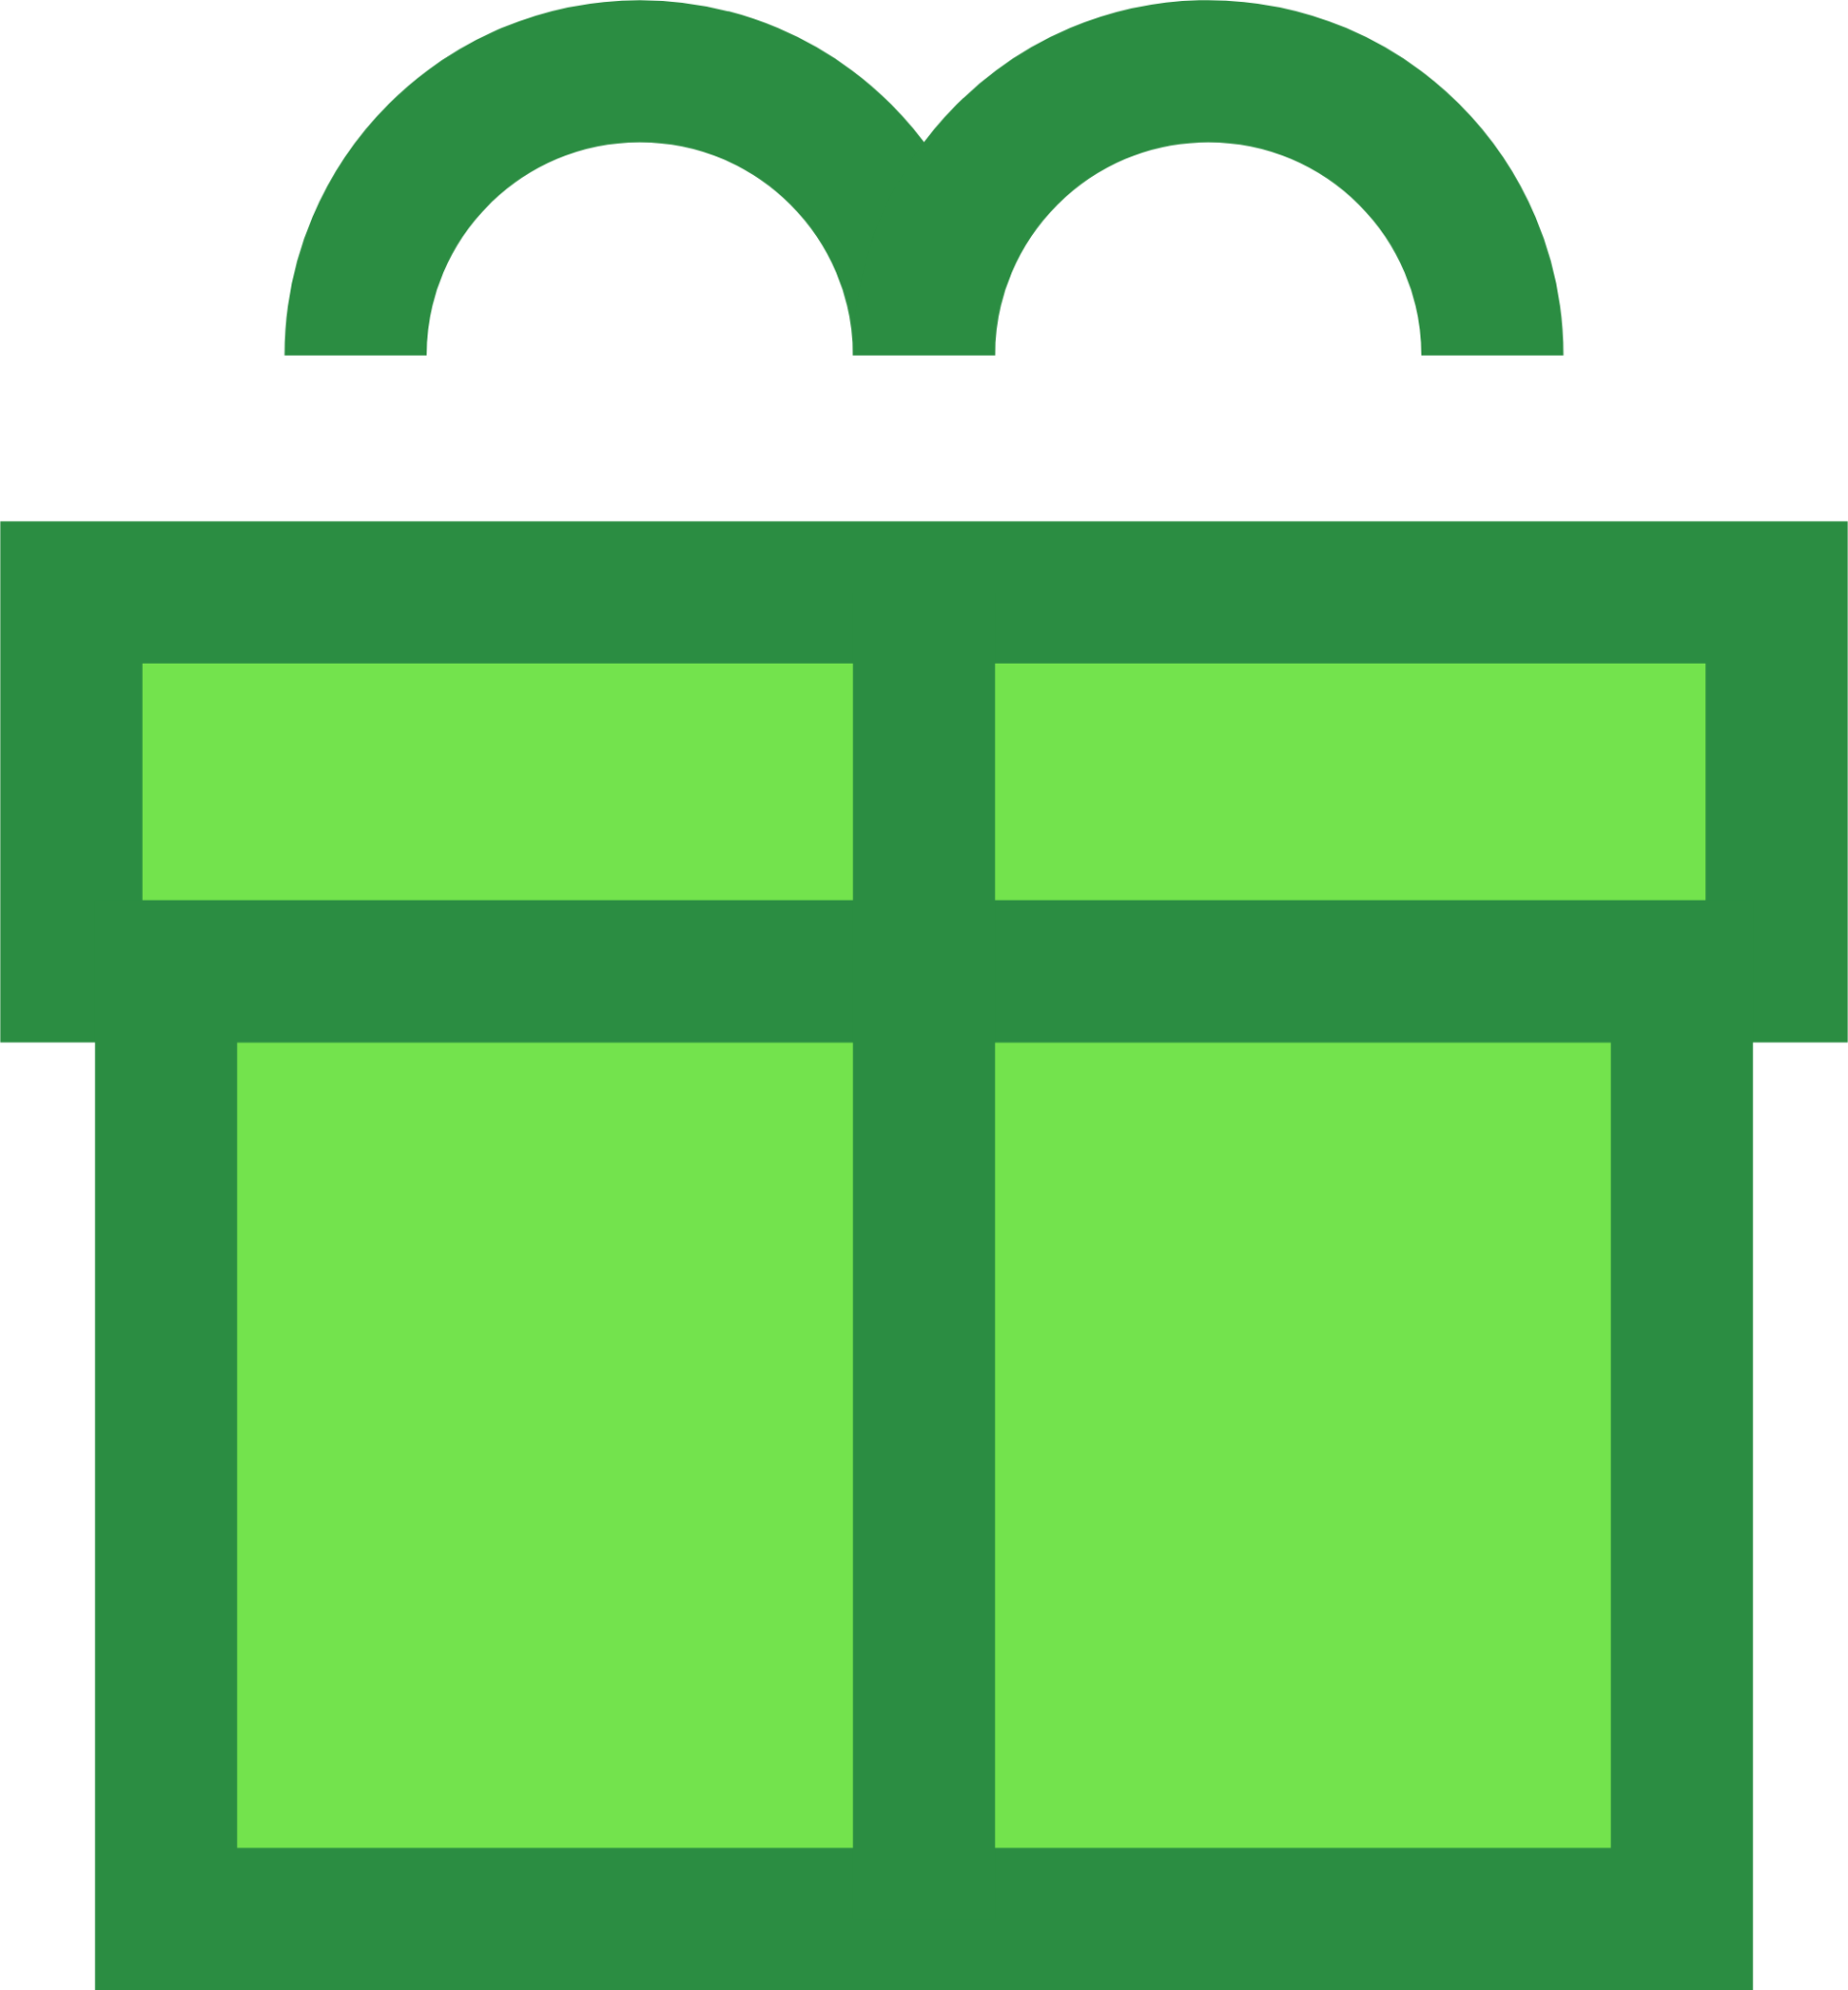 shopping gift icon